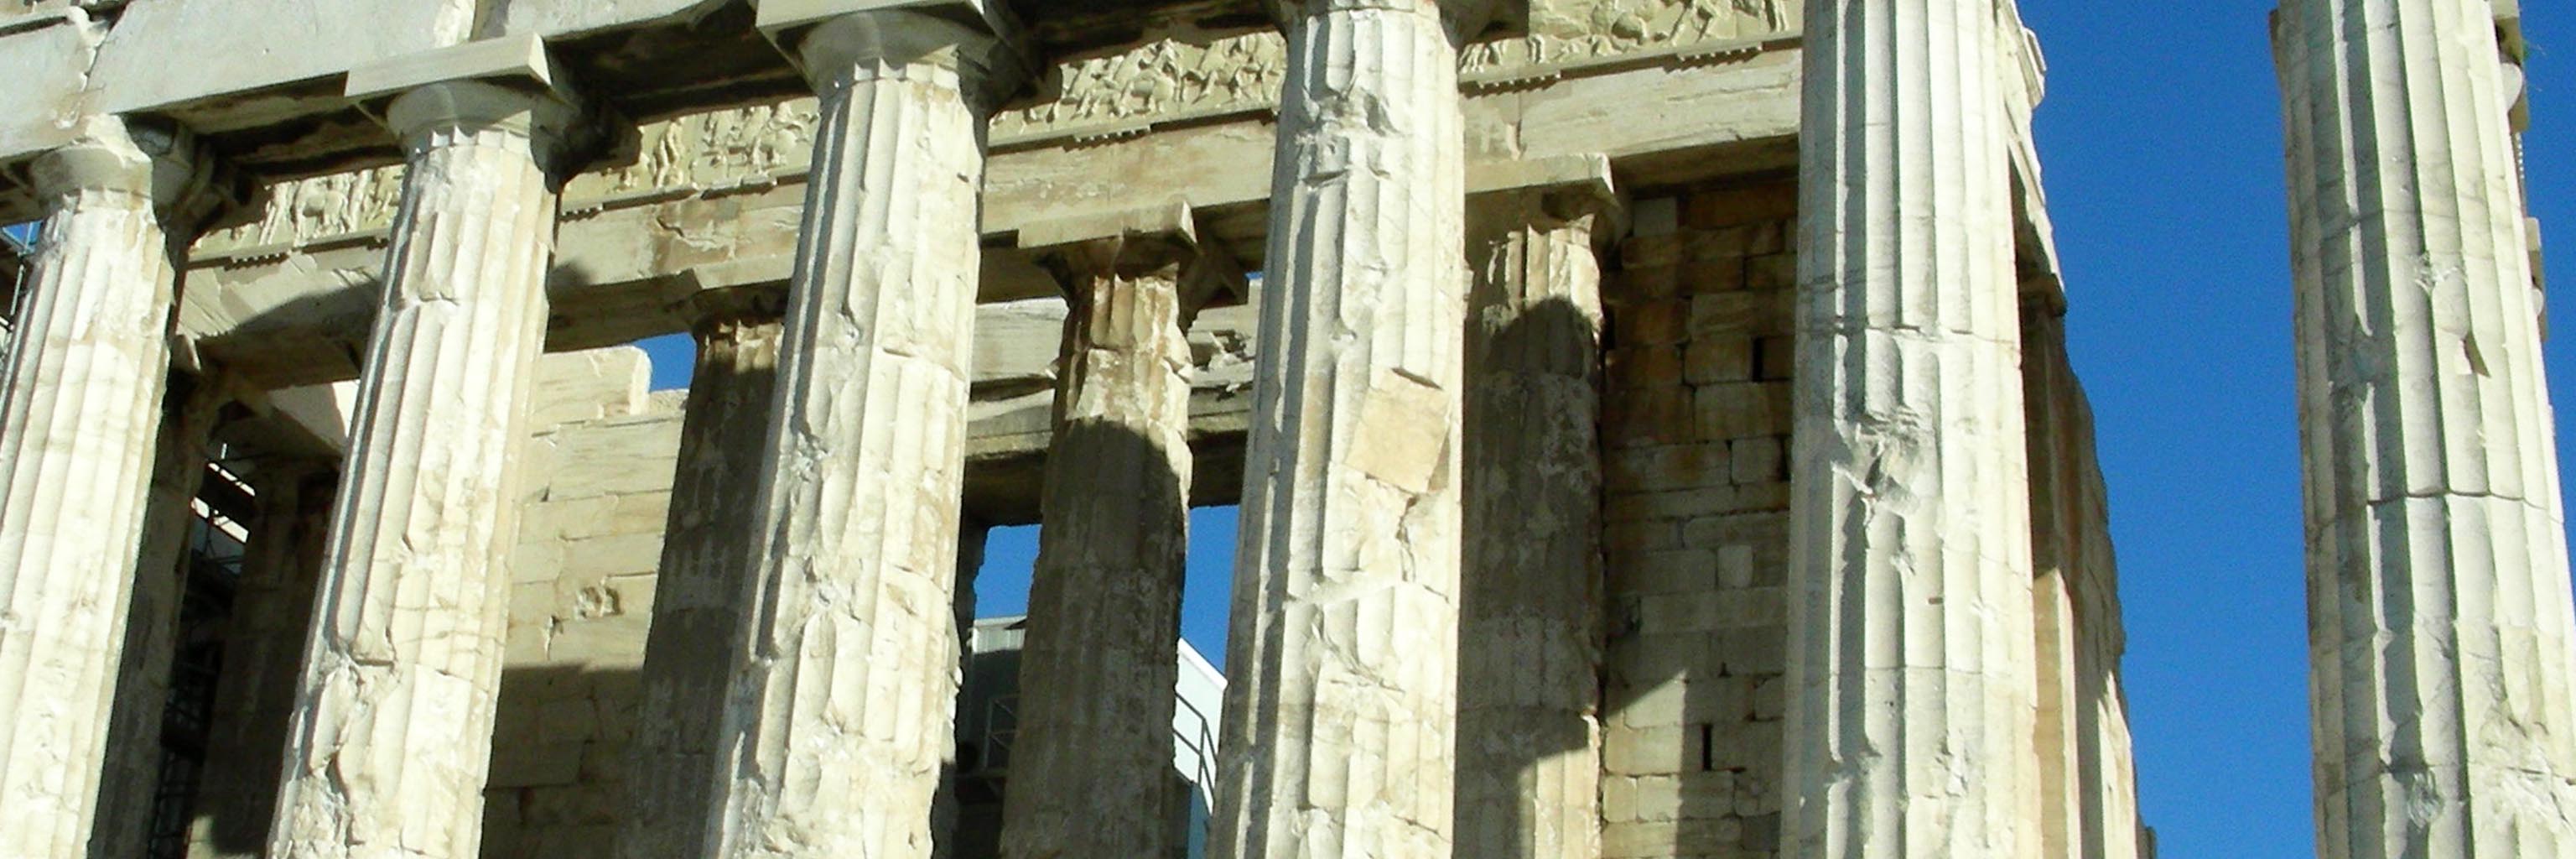 Parthenon site in Athens